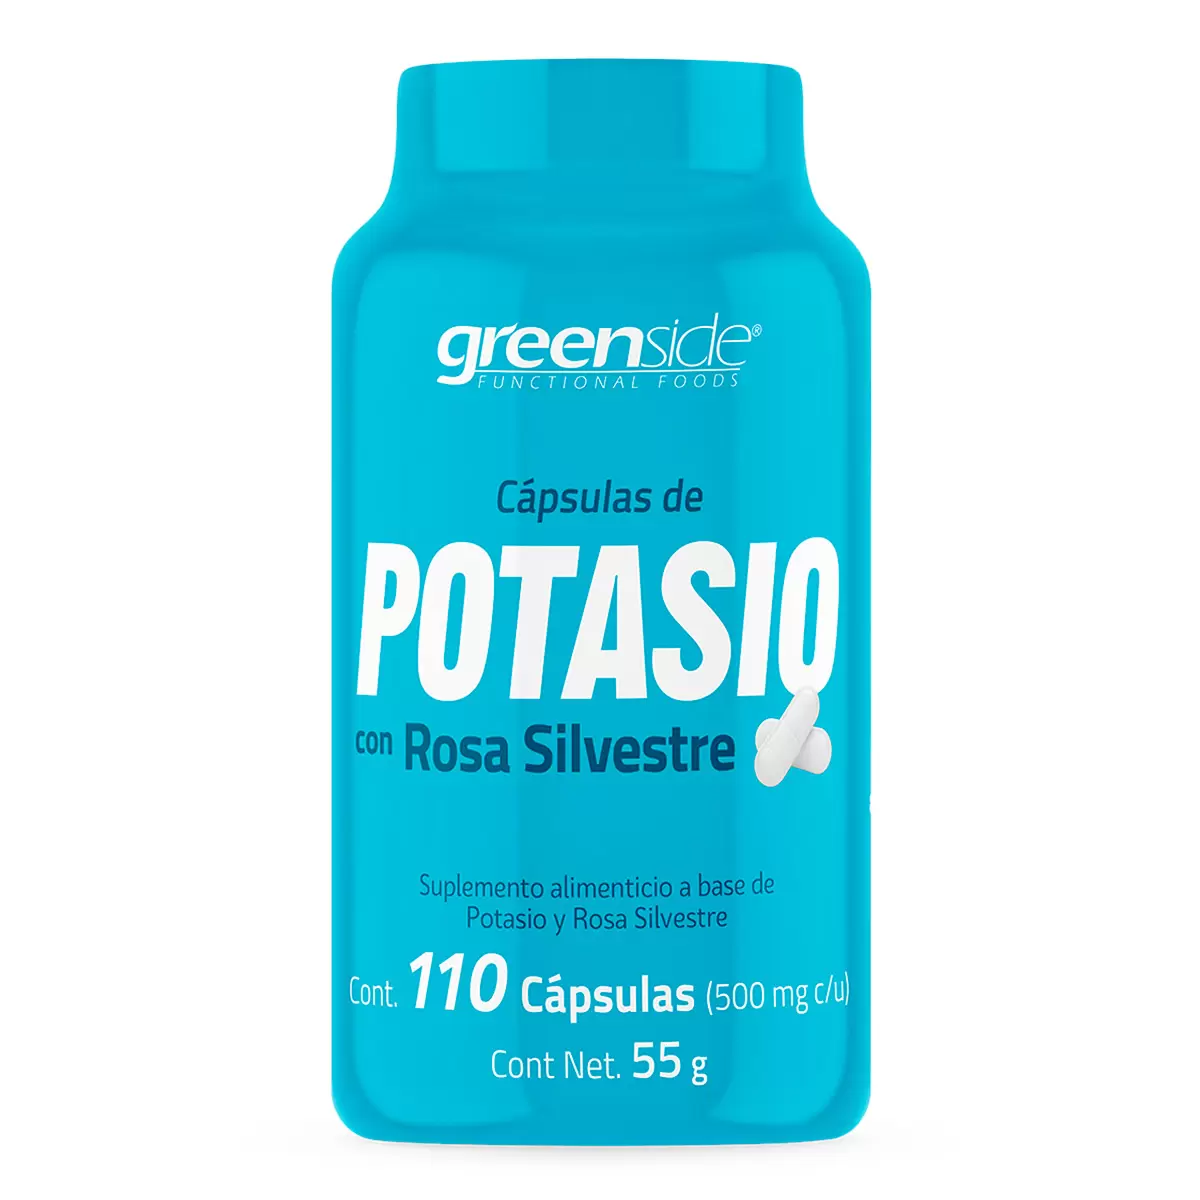 Greenside Potasio con Rosa Silvestre 110 Cápsulas